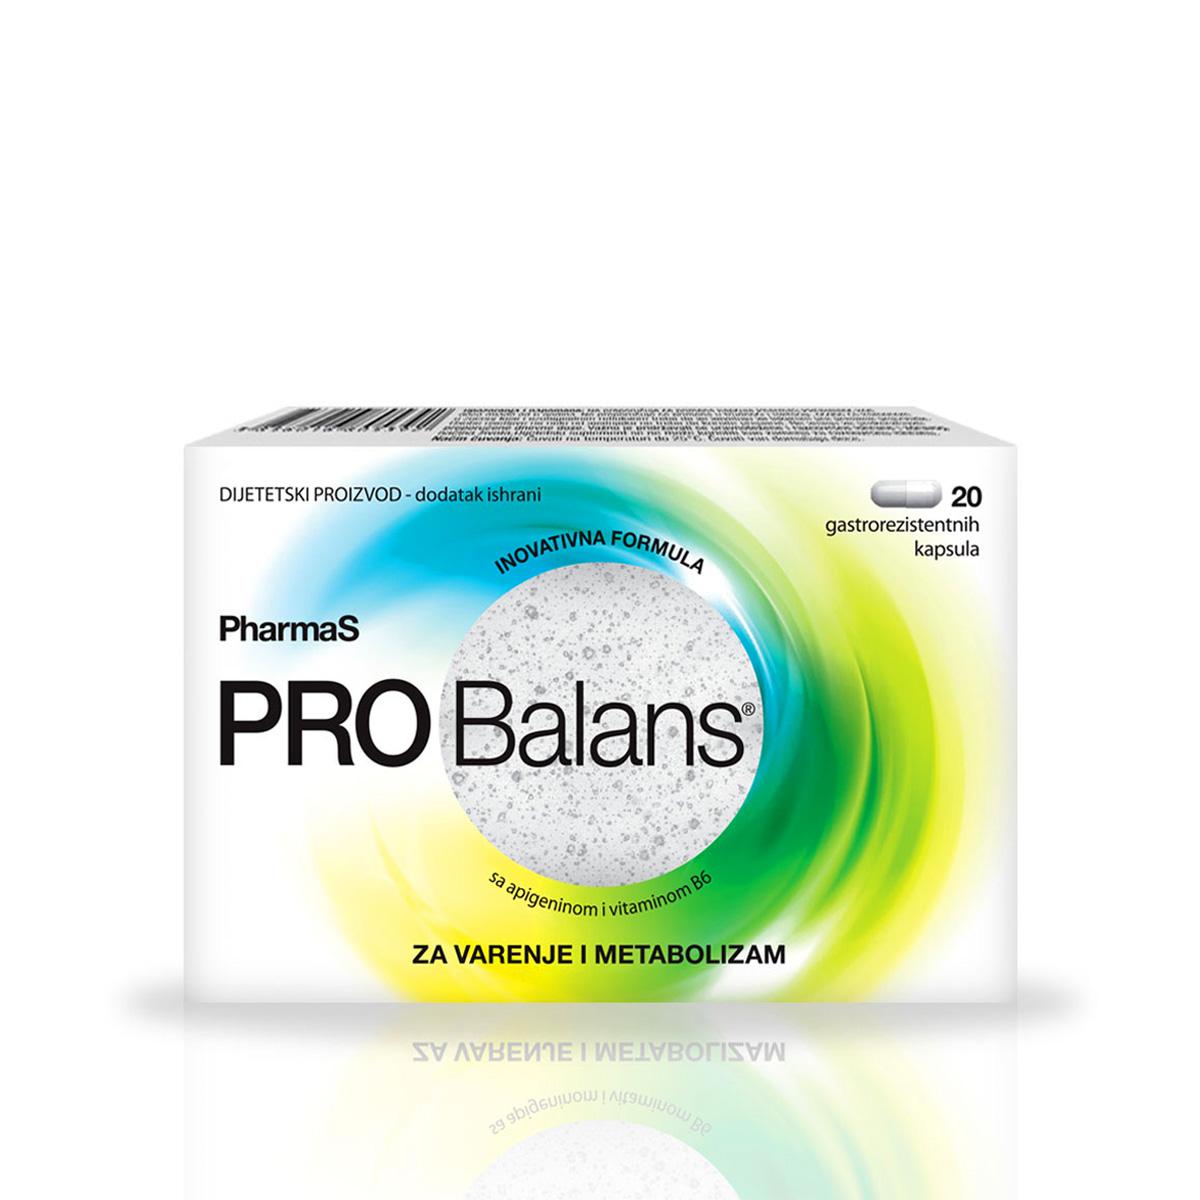 Selected image for PHARMAS Probiotik za varenje i metabolizam PROBalans 20/1 120469